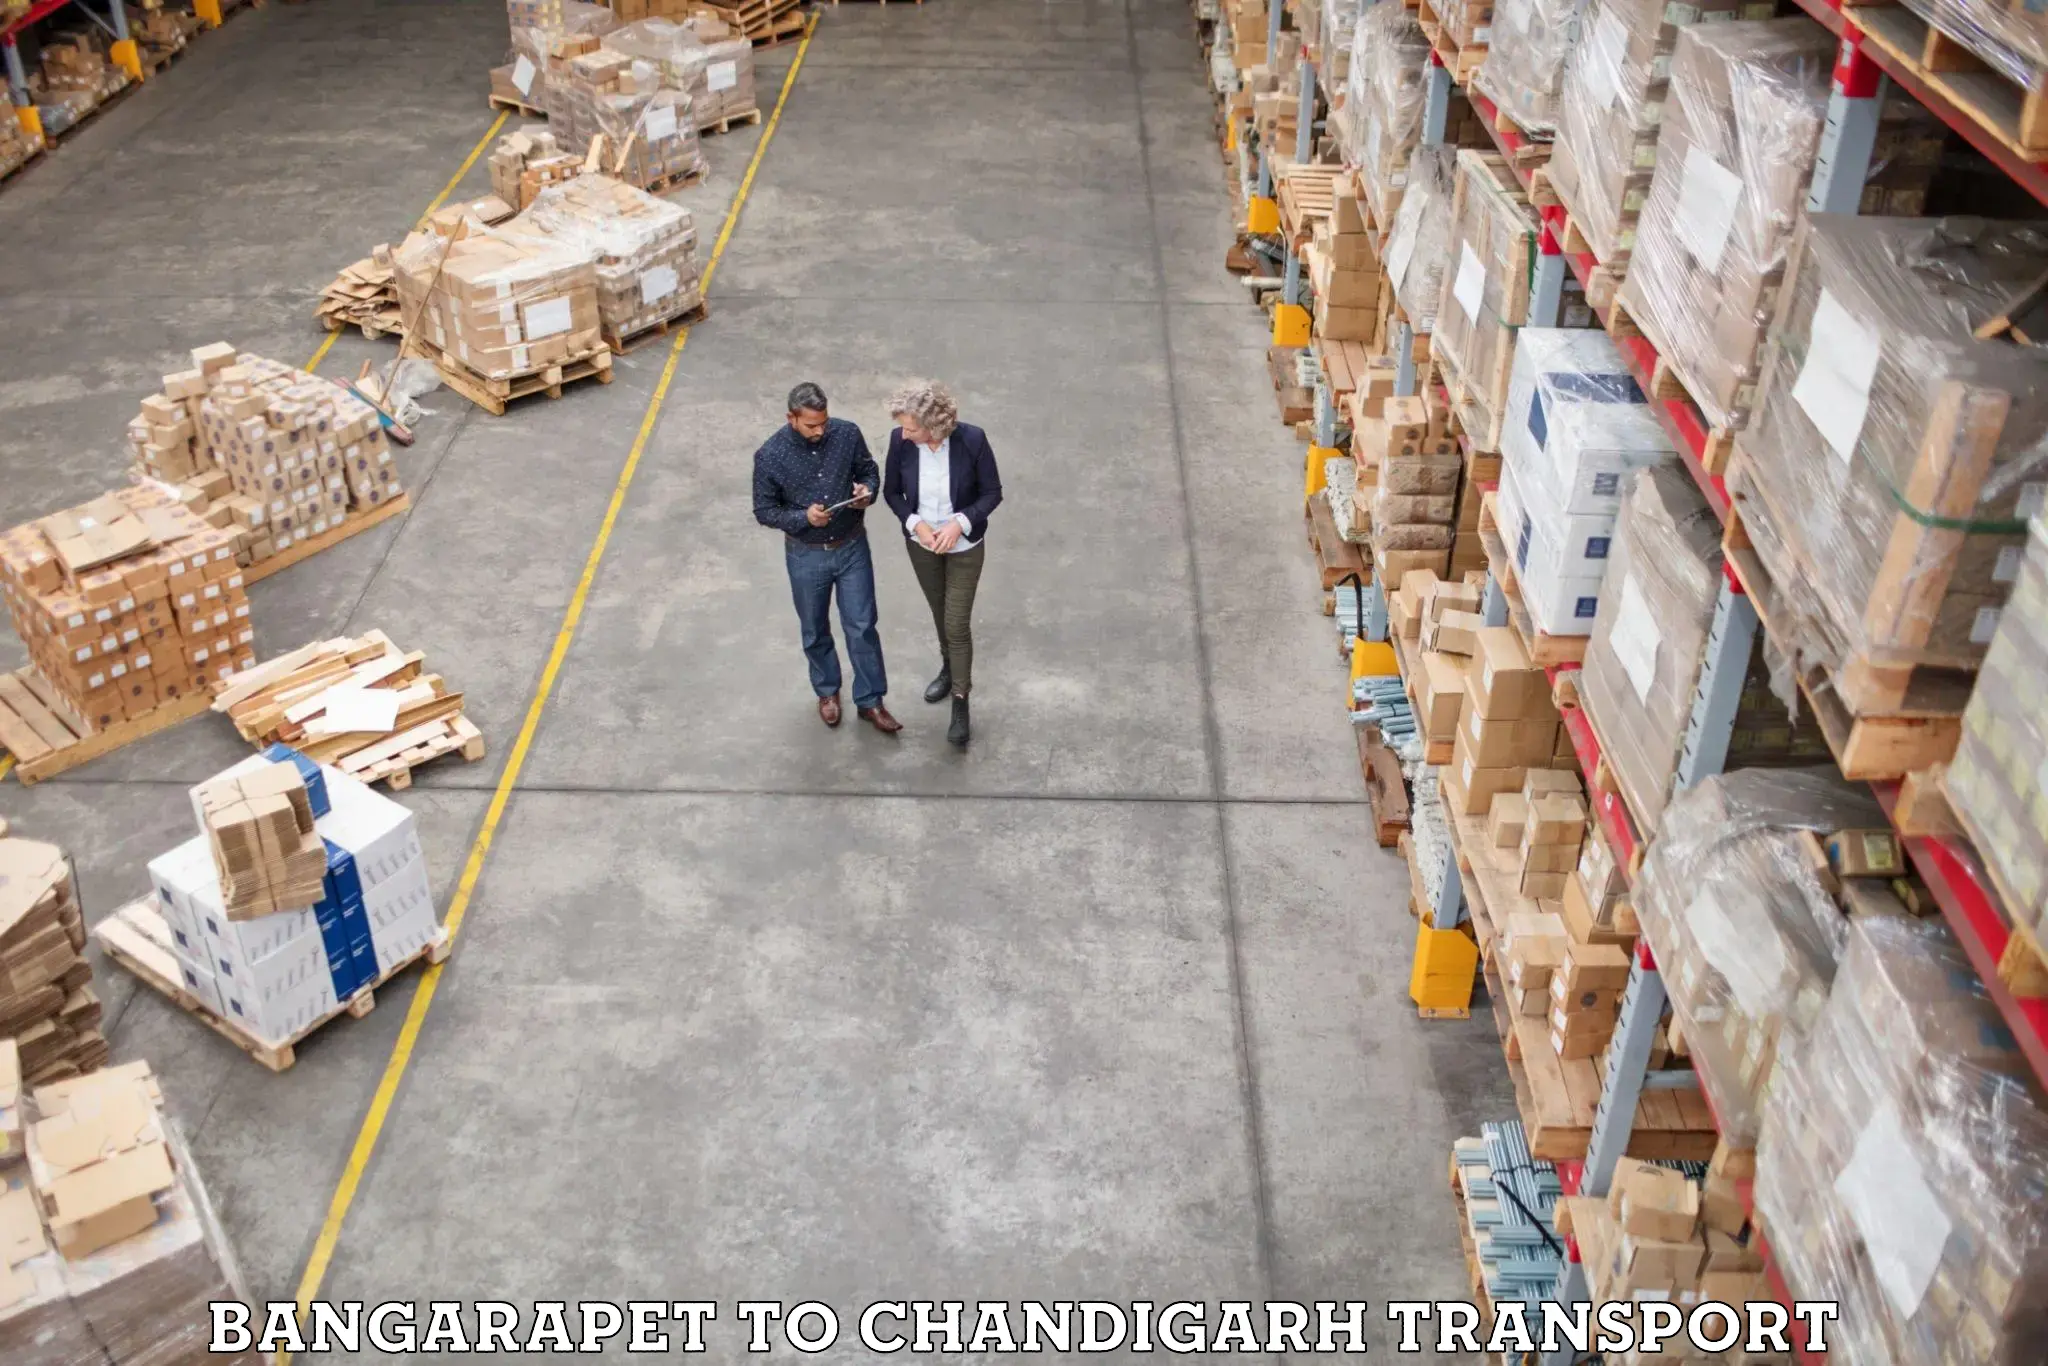 Truck transport companies in India Bangarapet to Chandigarh